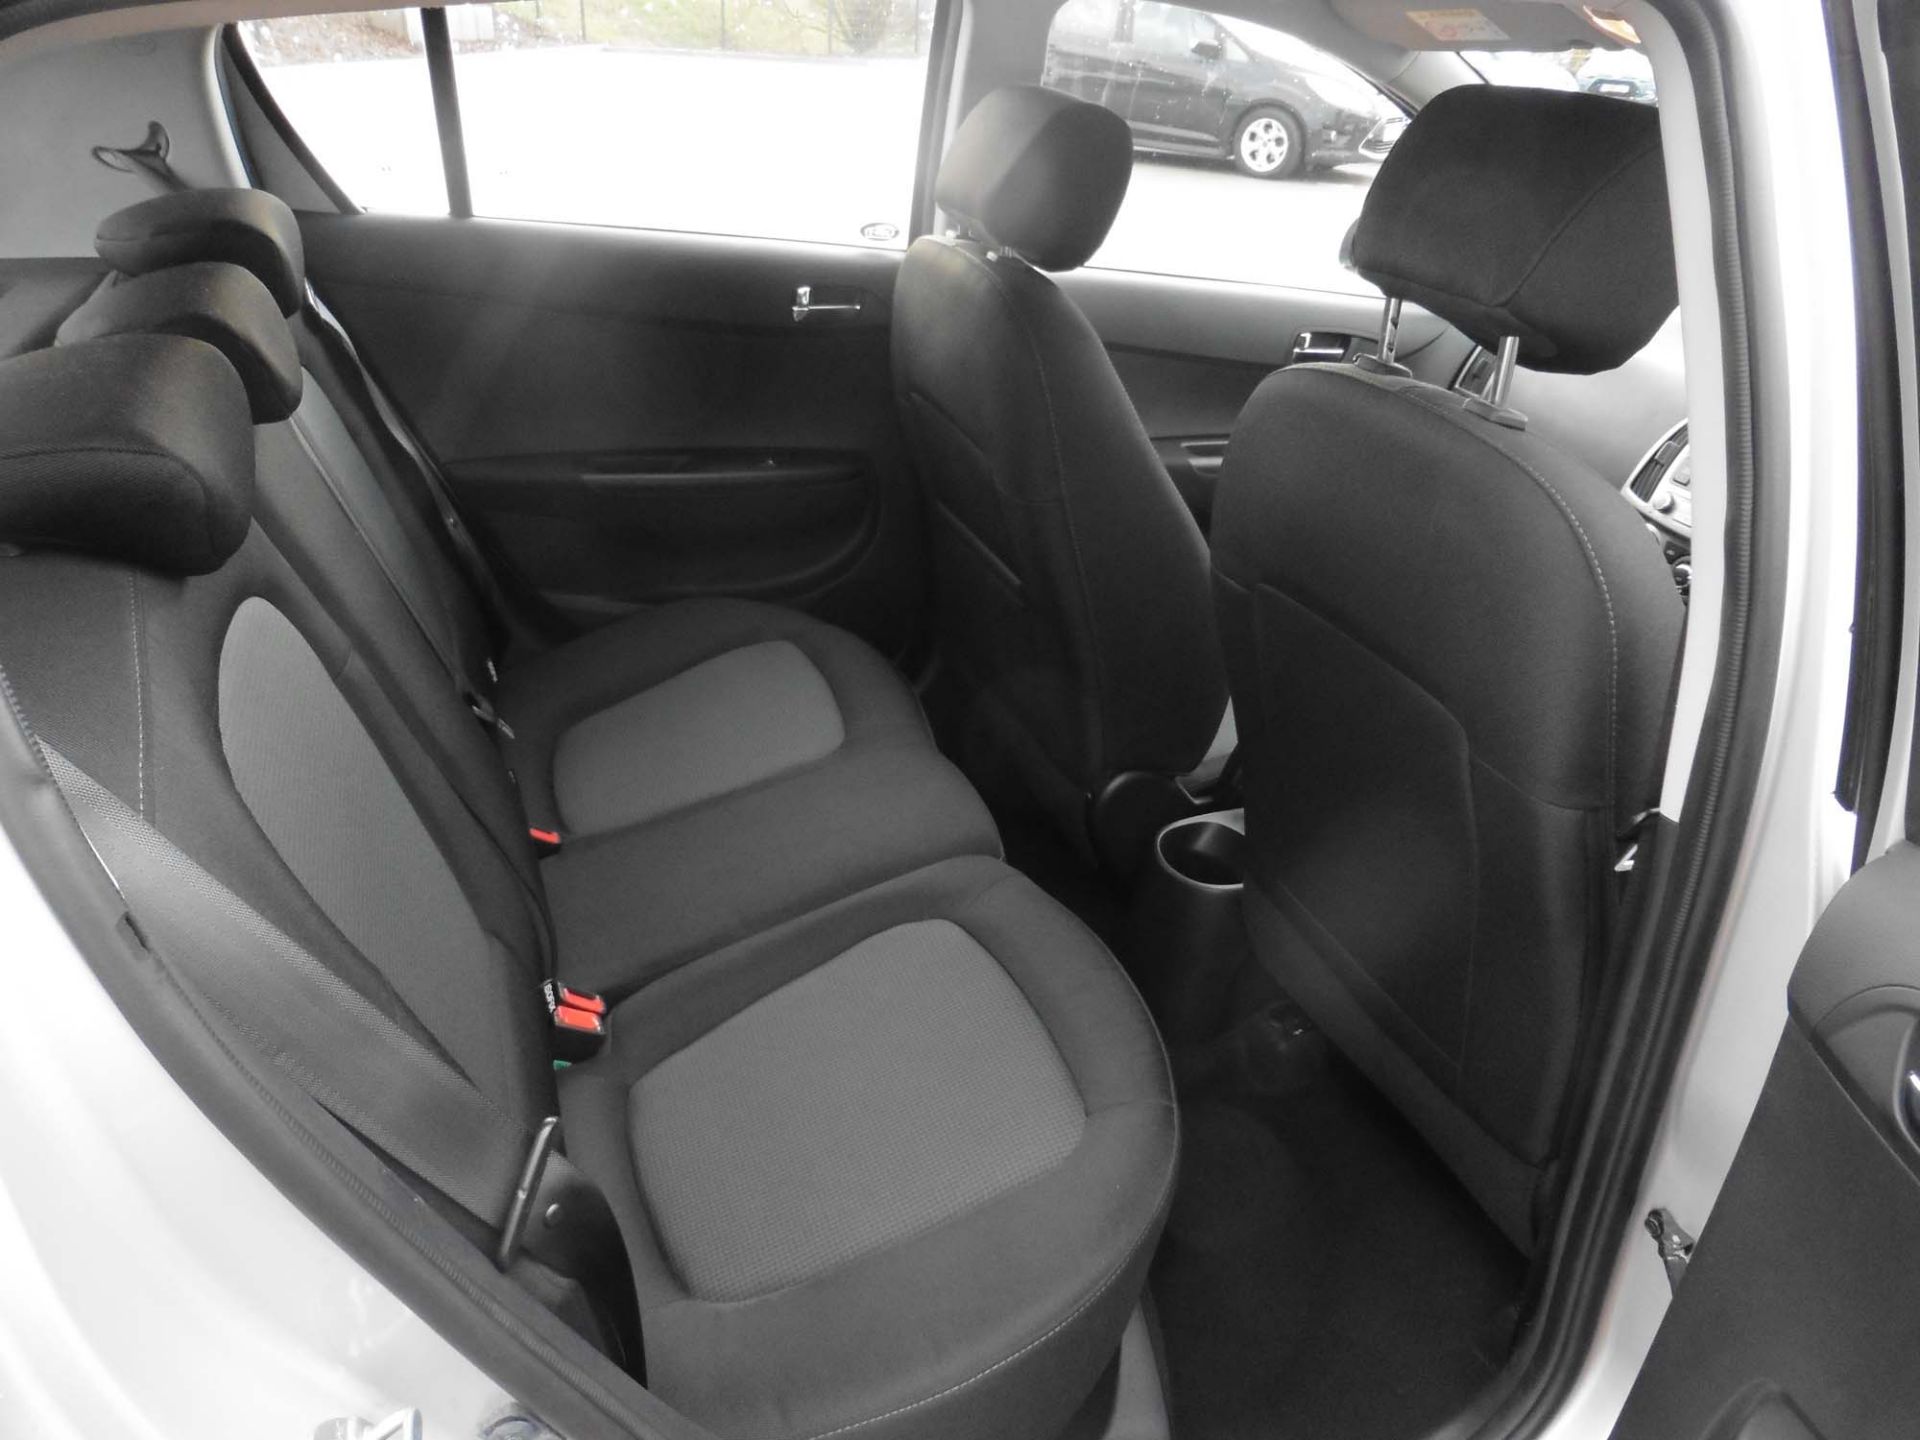 Hyundai i20 Active 1248cc 5 door hatchback Registration number: LL64 XJJ First Registered: 30.12. - Image 8 of 10